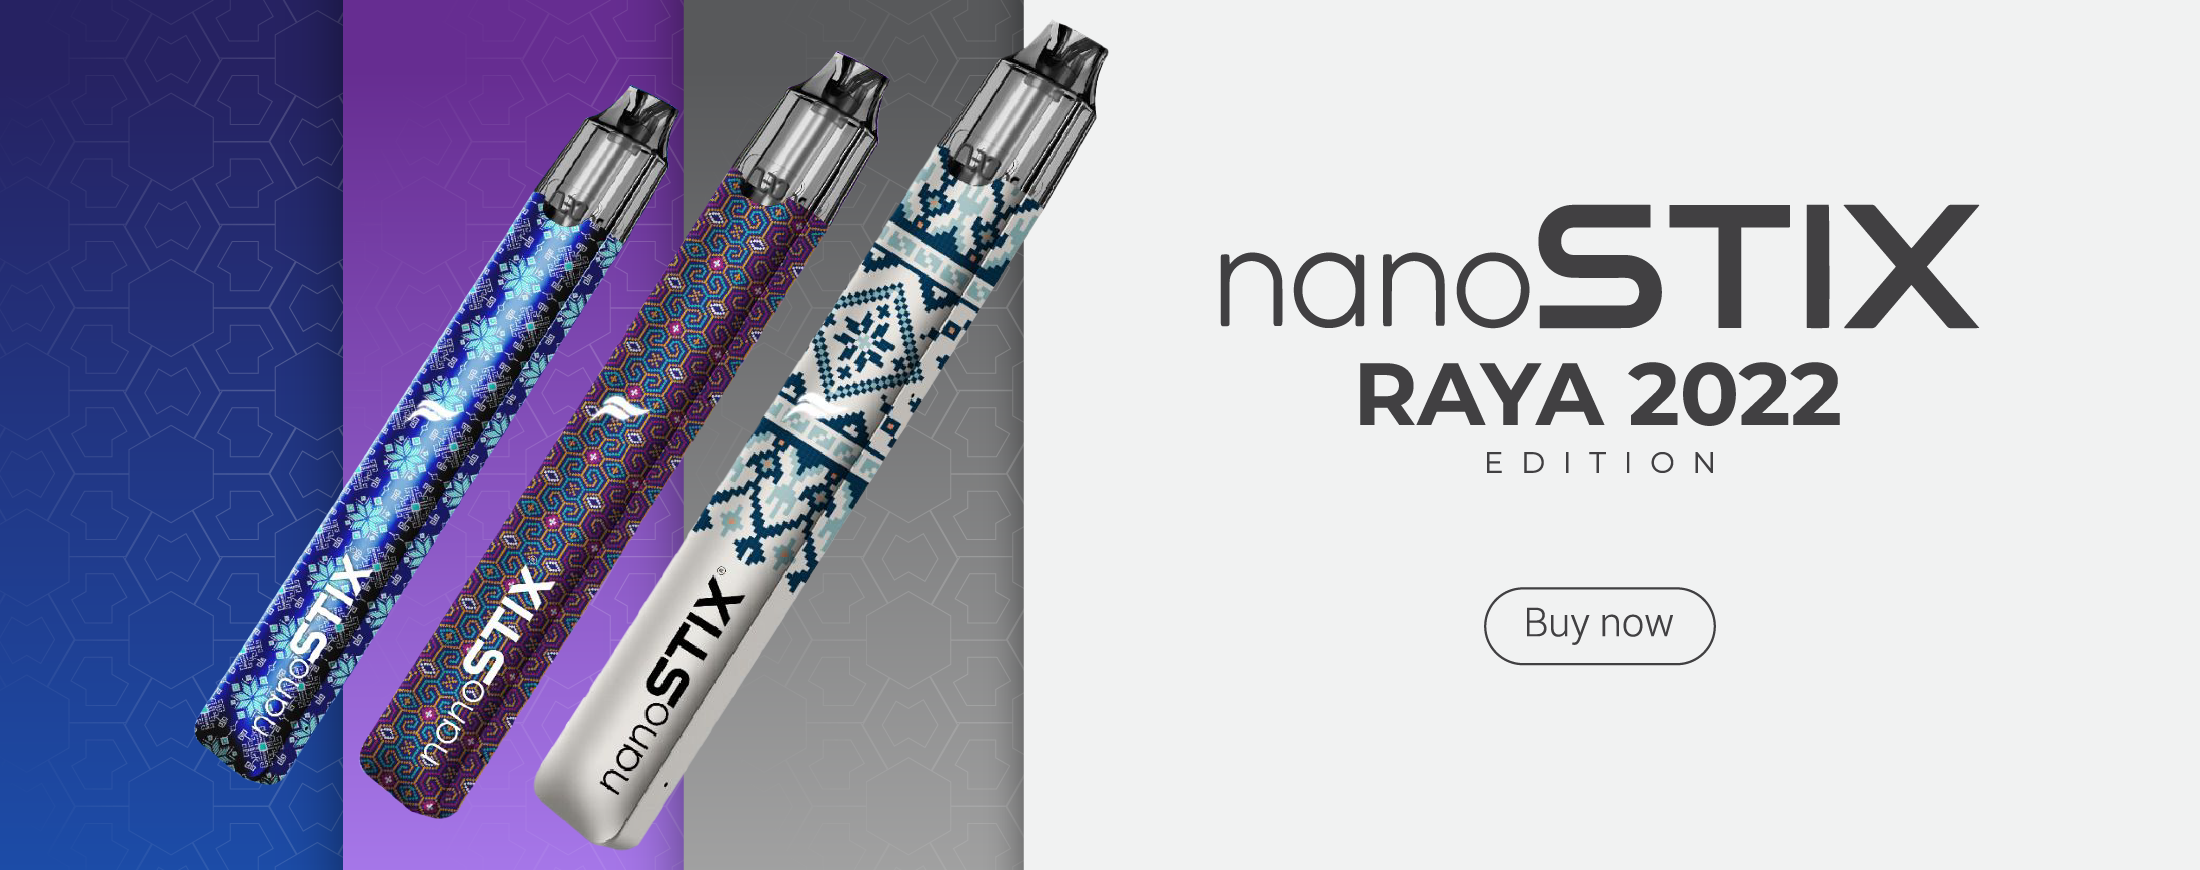 NanoSTIX Neo Raya Edition